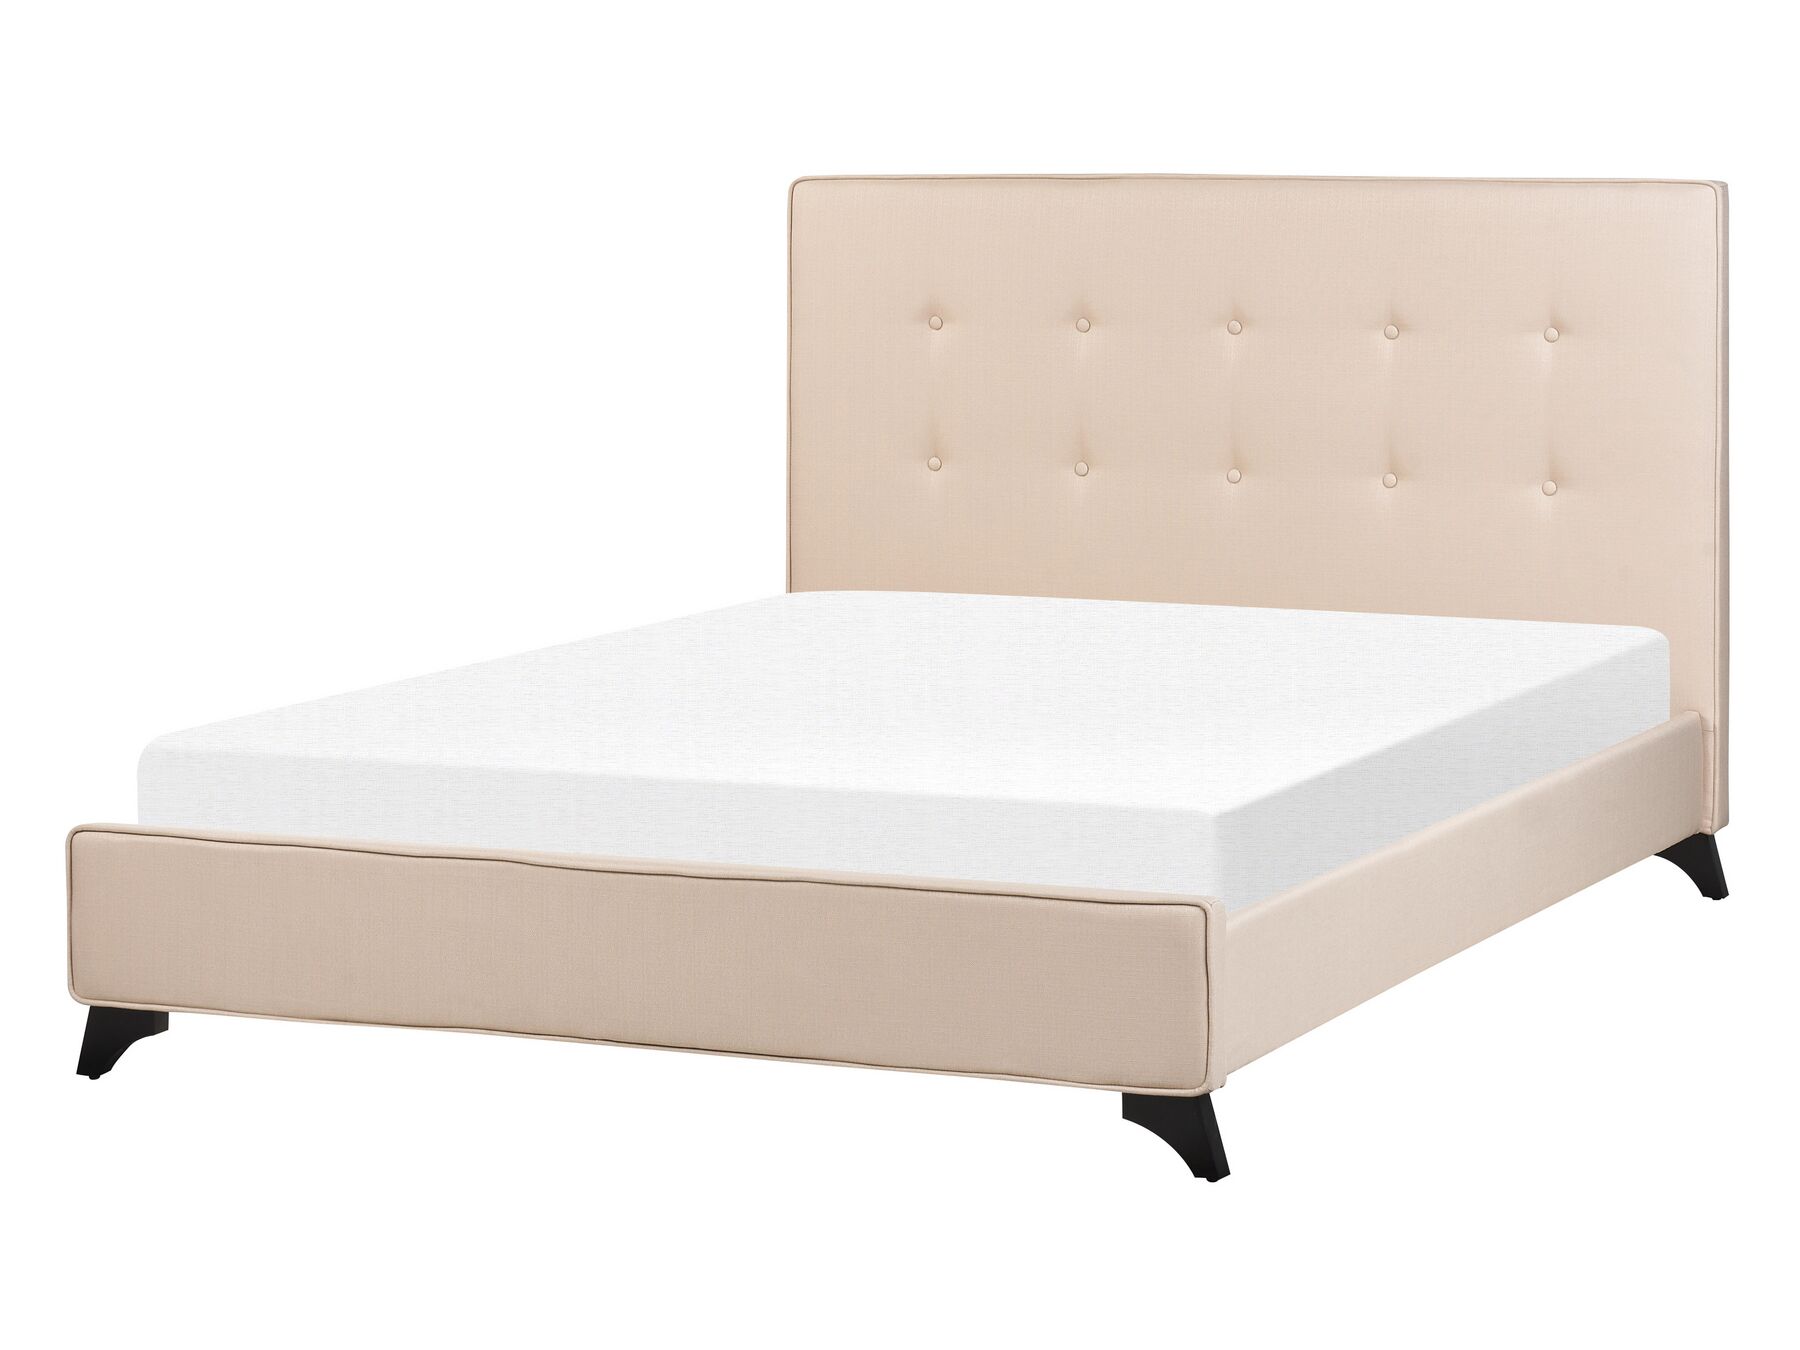 Čalouněná béžová manželská postel 140x200 cm AMBASSADOR_871068